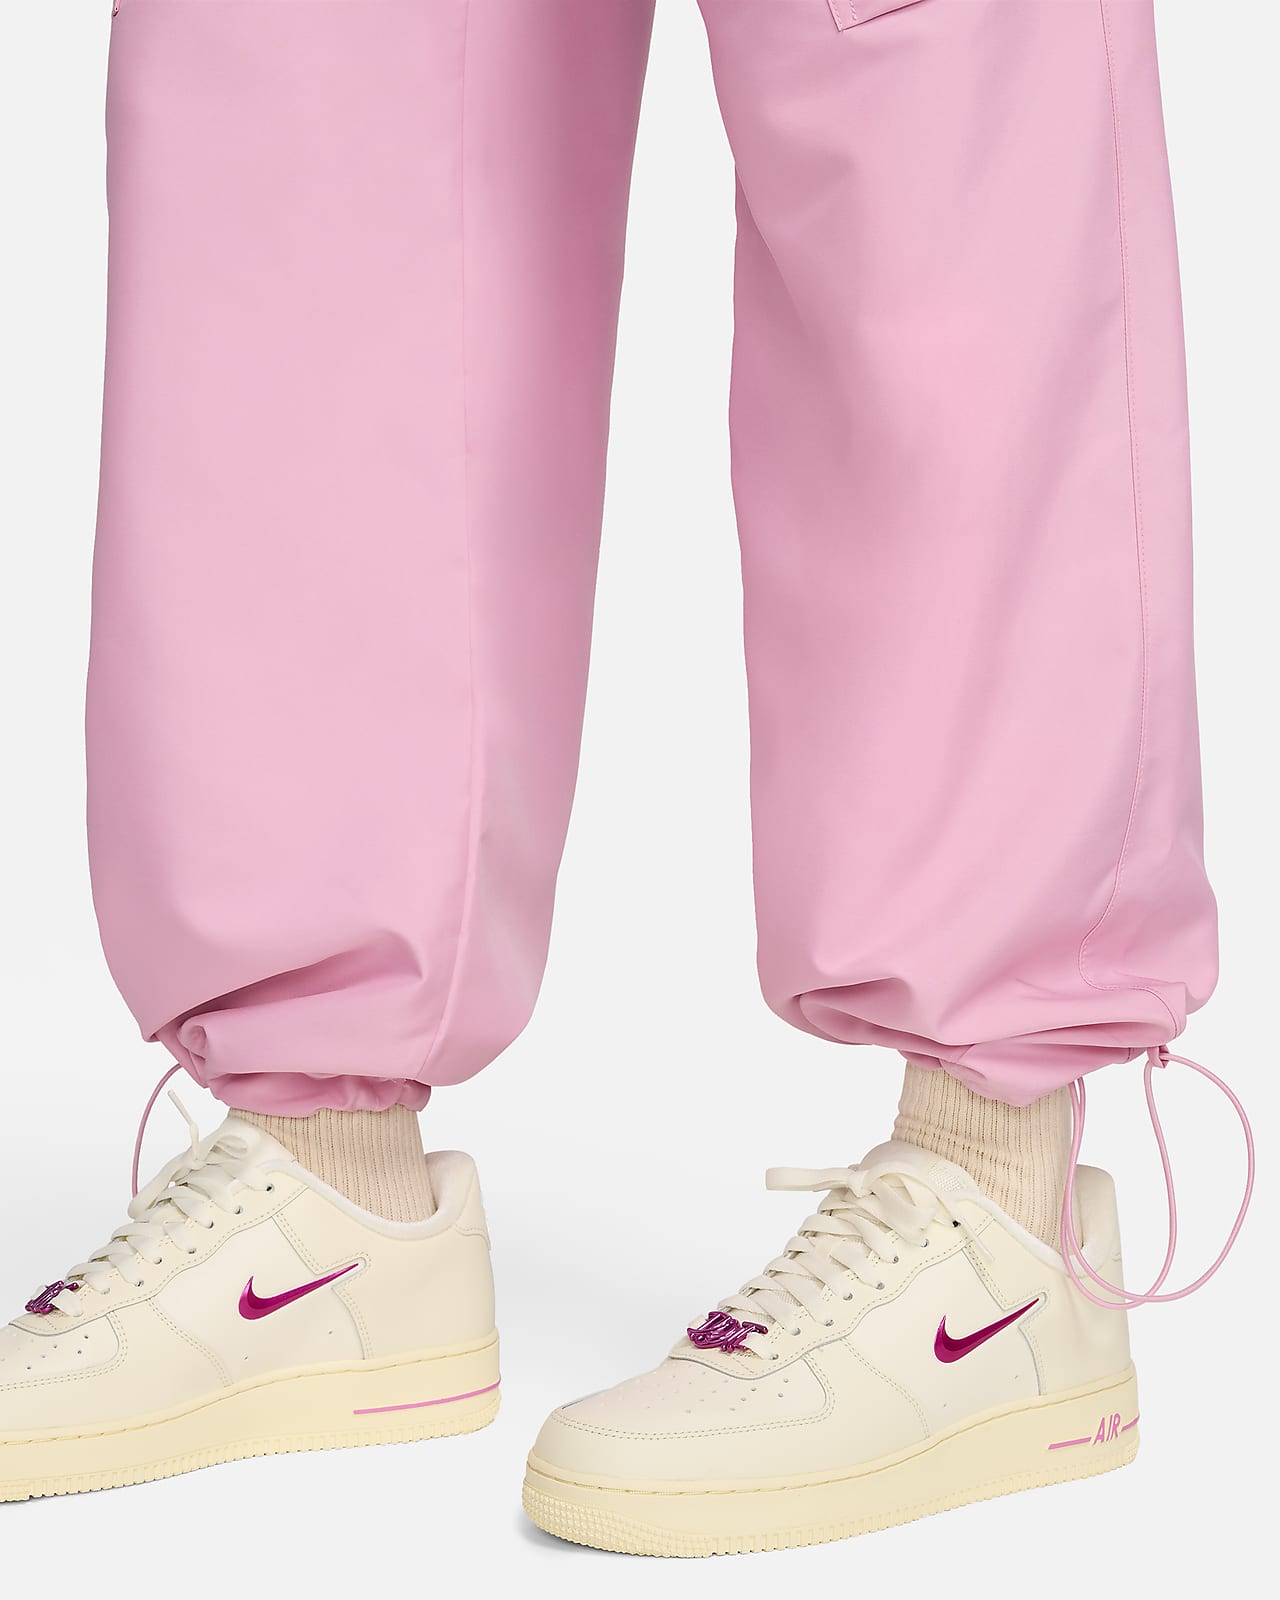 Nike Sportswear Women's Woven Cargo Trousers. Nike HR